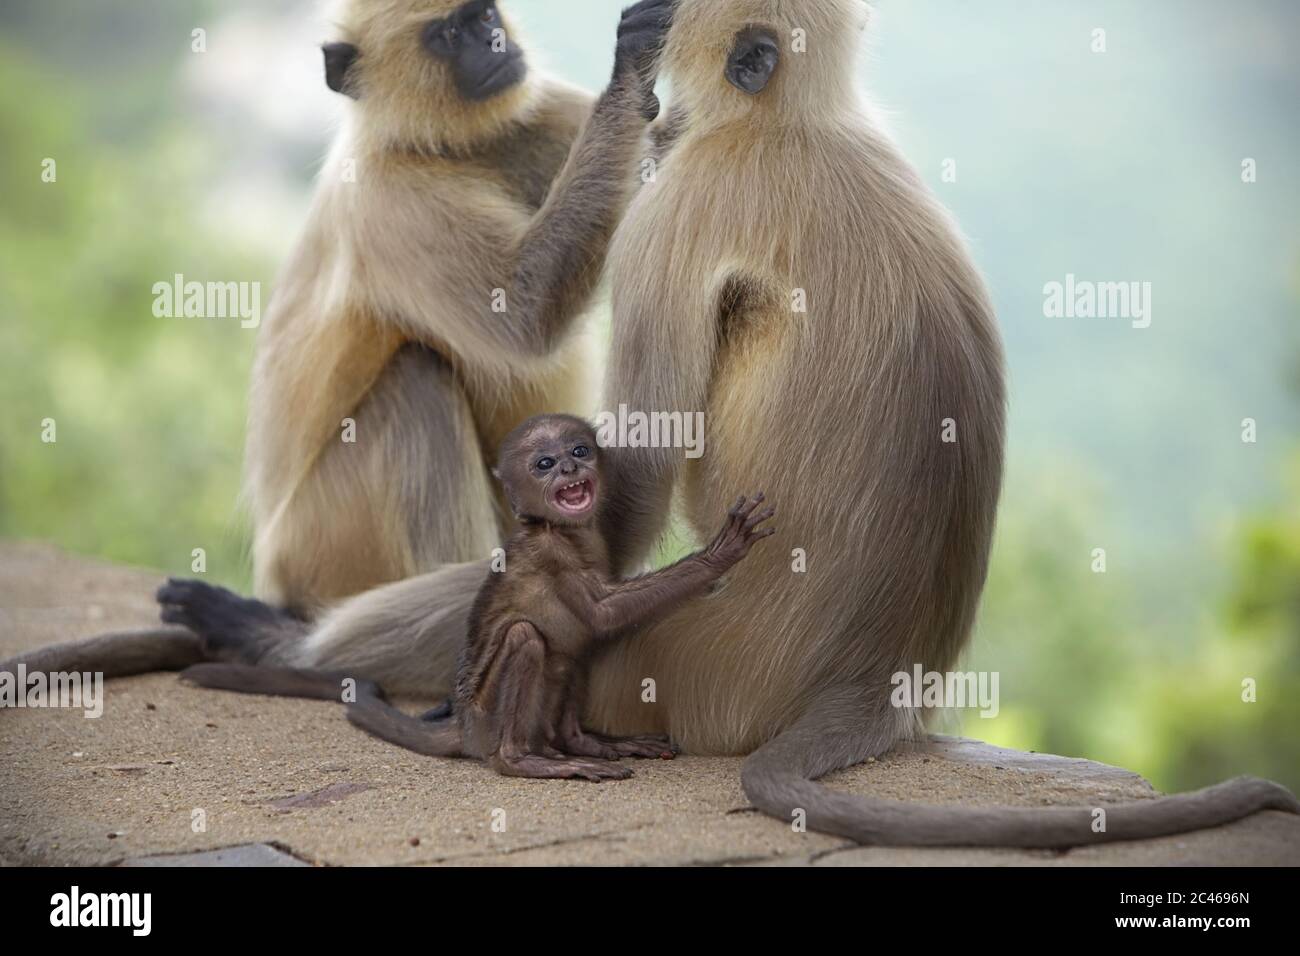 Hanuman langurs (grau langurs, Semnopithecus) Pflege, mit einem Jugendlichen reagiert auf menschliche Präsenz. Rajgir Hills, Bihar, Indien. Stockfoto